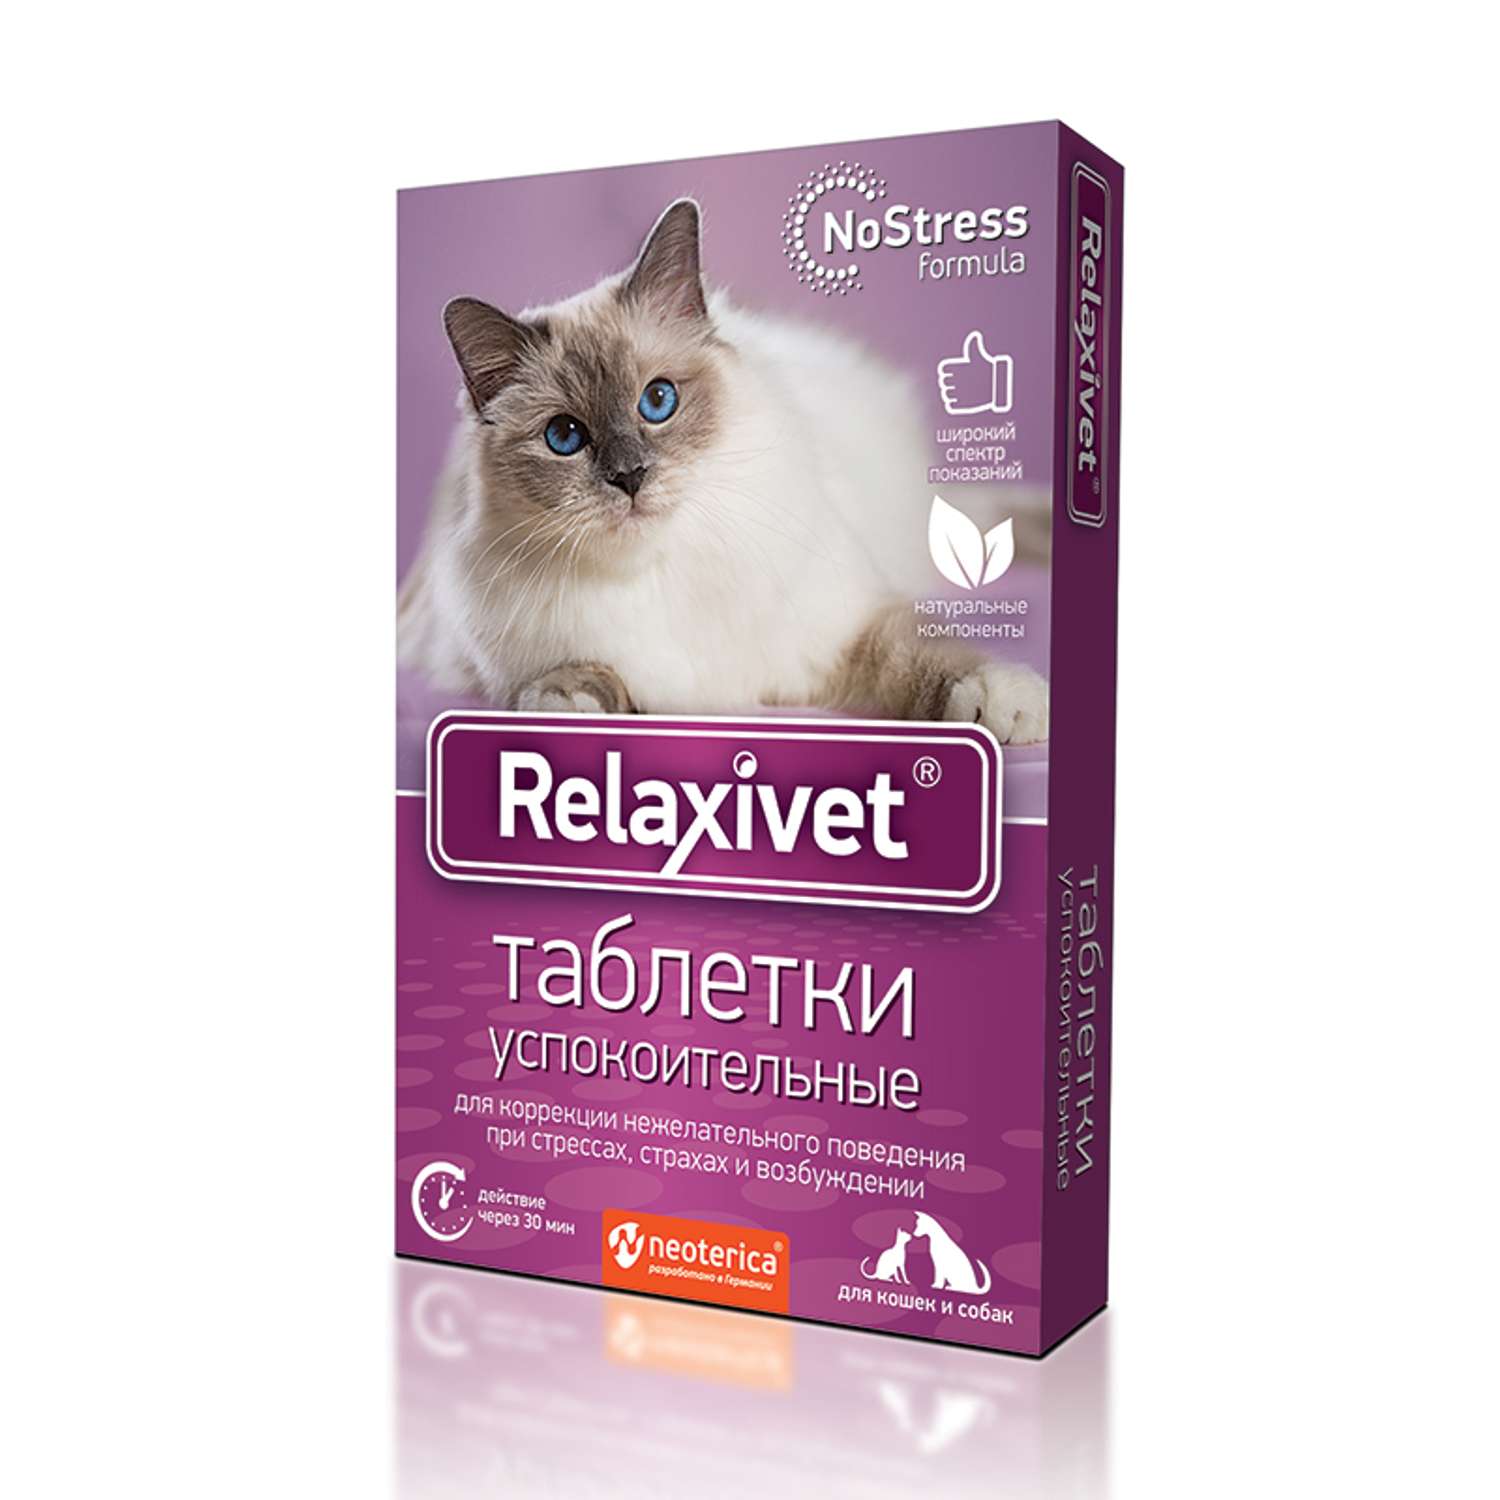 Таблетки для кошек и собак Relaxivet успокоительные 10шт - фото 1